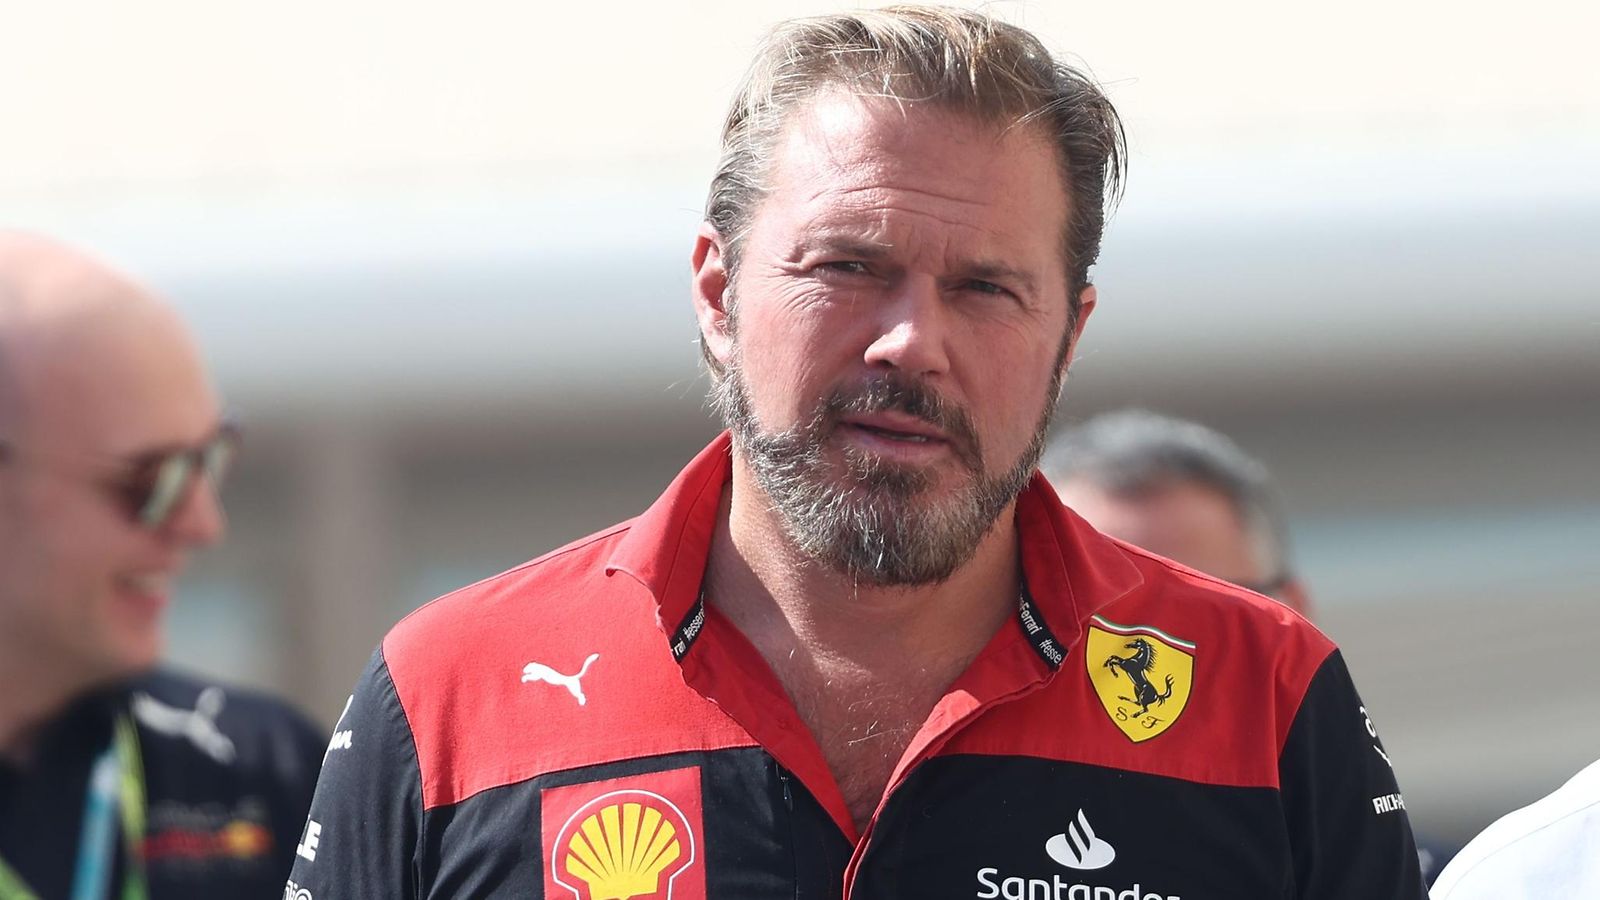 Ferrarilla työskentelevä Gino Rosato ylistää Robin Räikkösen ajotaitoja -  MTVuutiset.fi